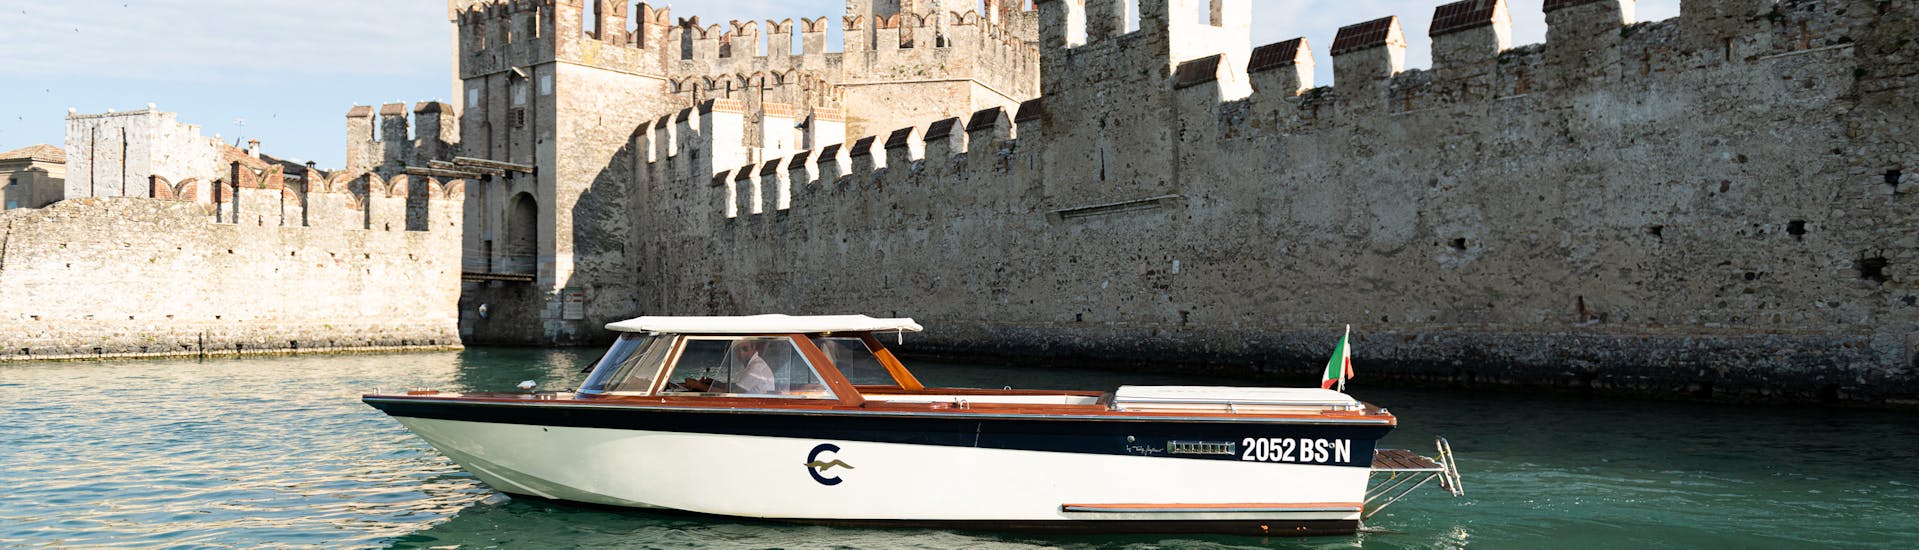 Un bateau en bois de style vénitien devant les murs du château Scaliger à Sirmione, utilisé lors de la Balade privée en bateau au sud du lac de Garde avec Visites à terre avec Consolini Boats Garda.